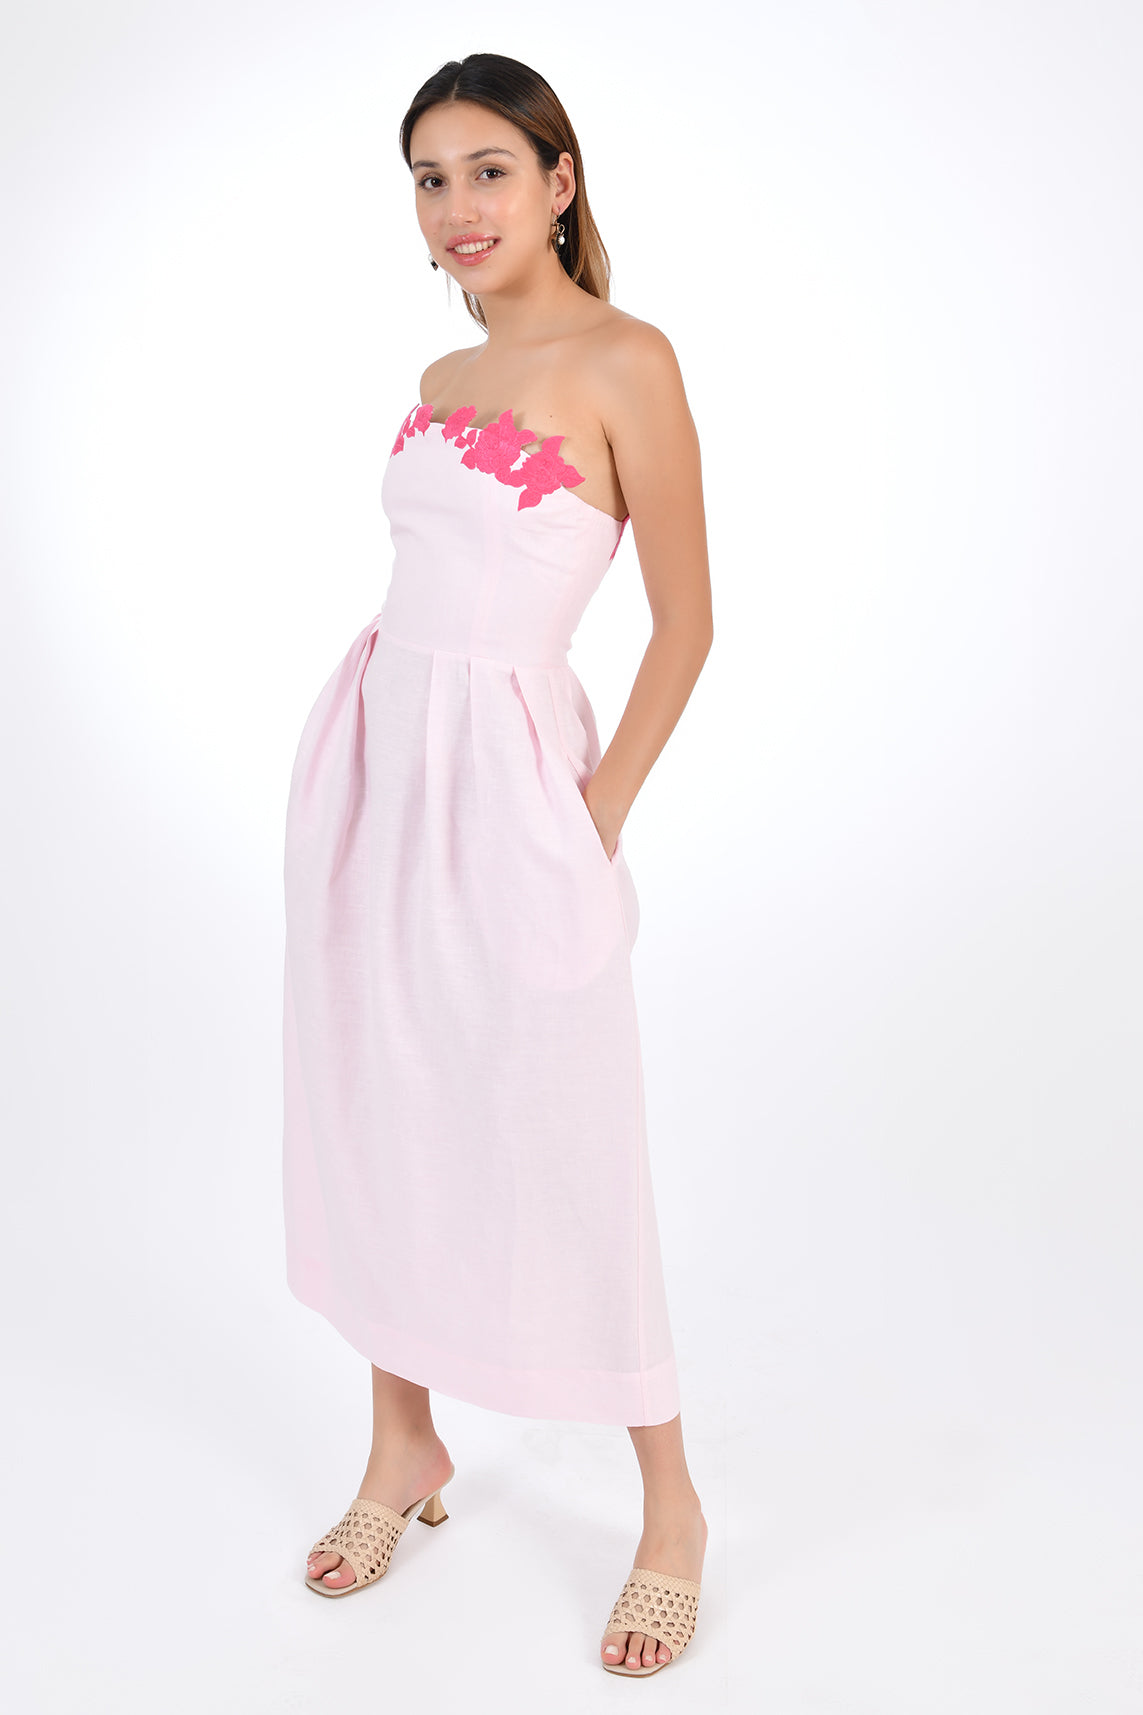 Fanm Mon Lorr Linen  Dress in Light pink, side view.